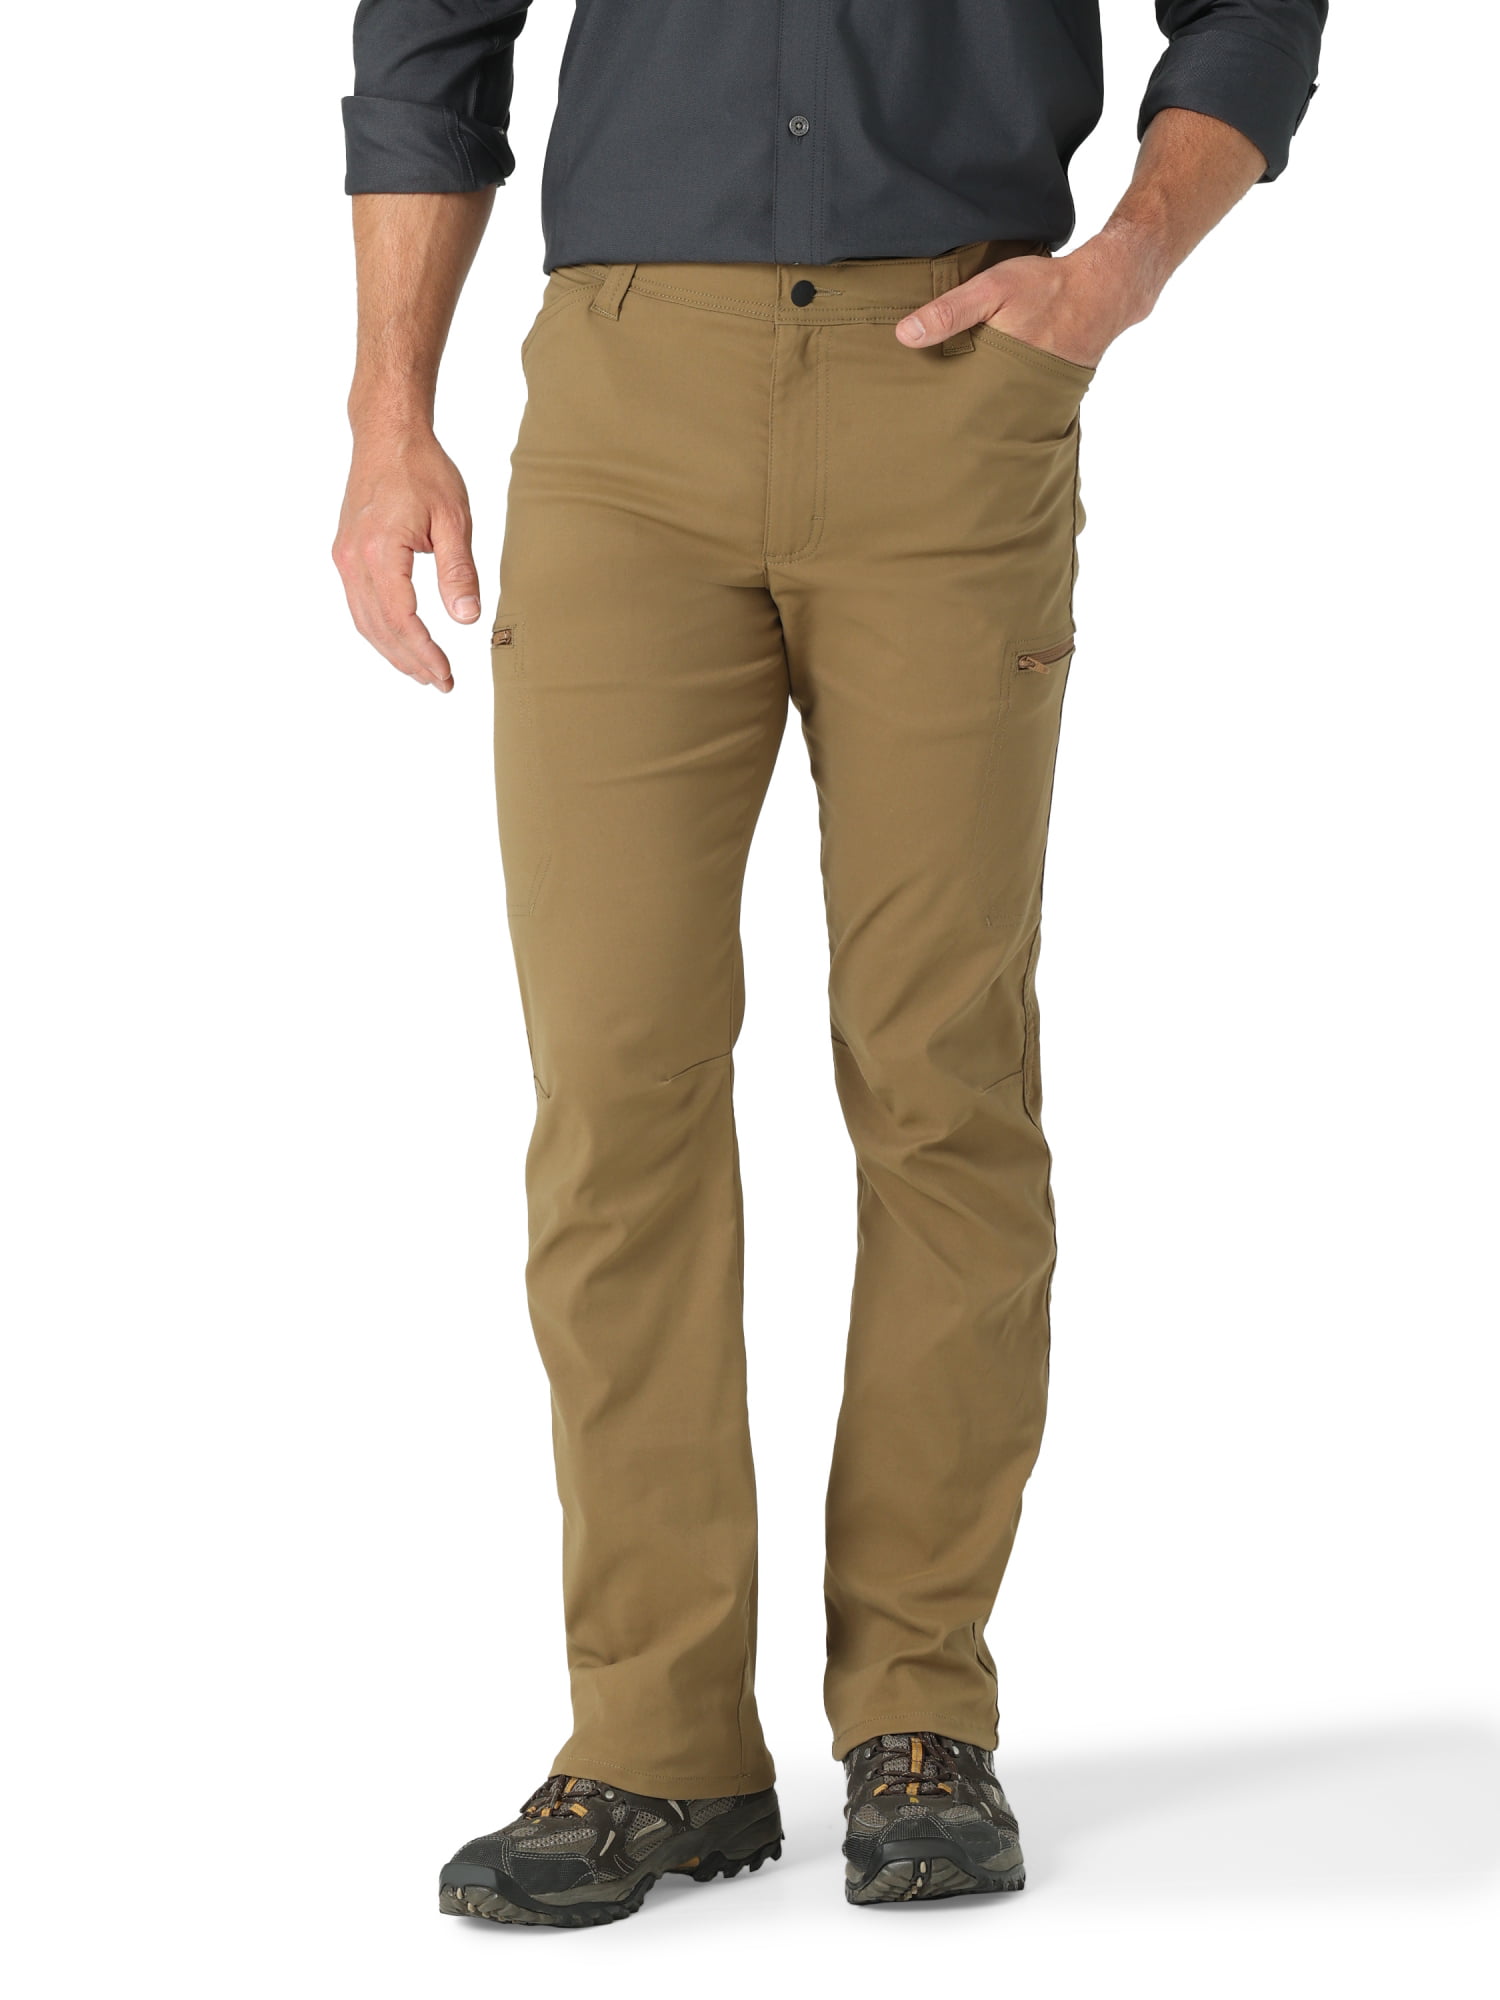 Wrangler Men's Outdoor Zip Cargo Pant - Walmart.com